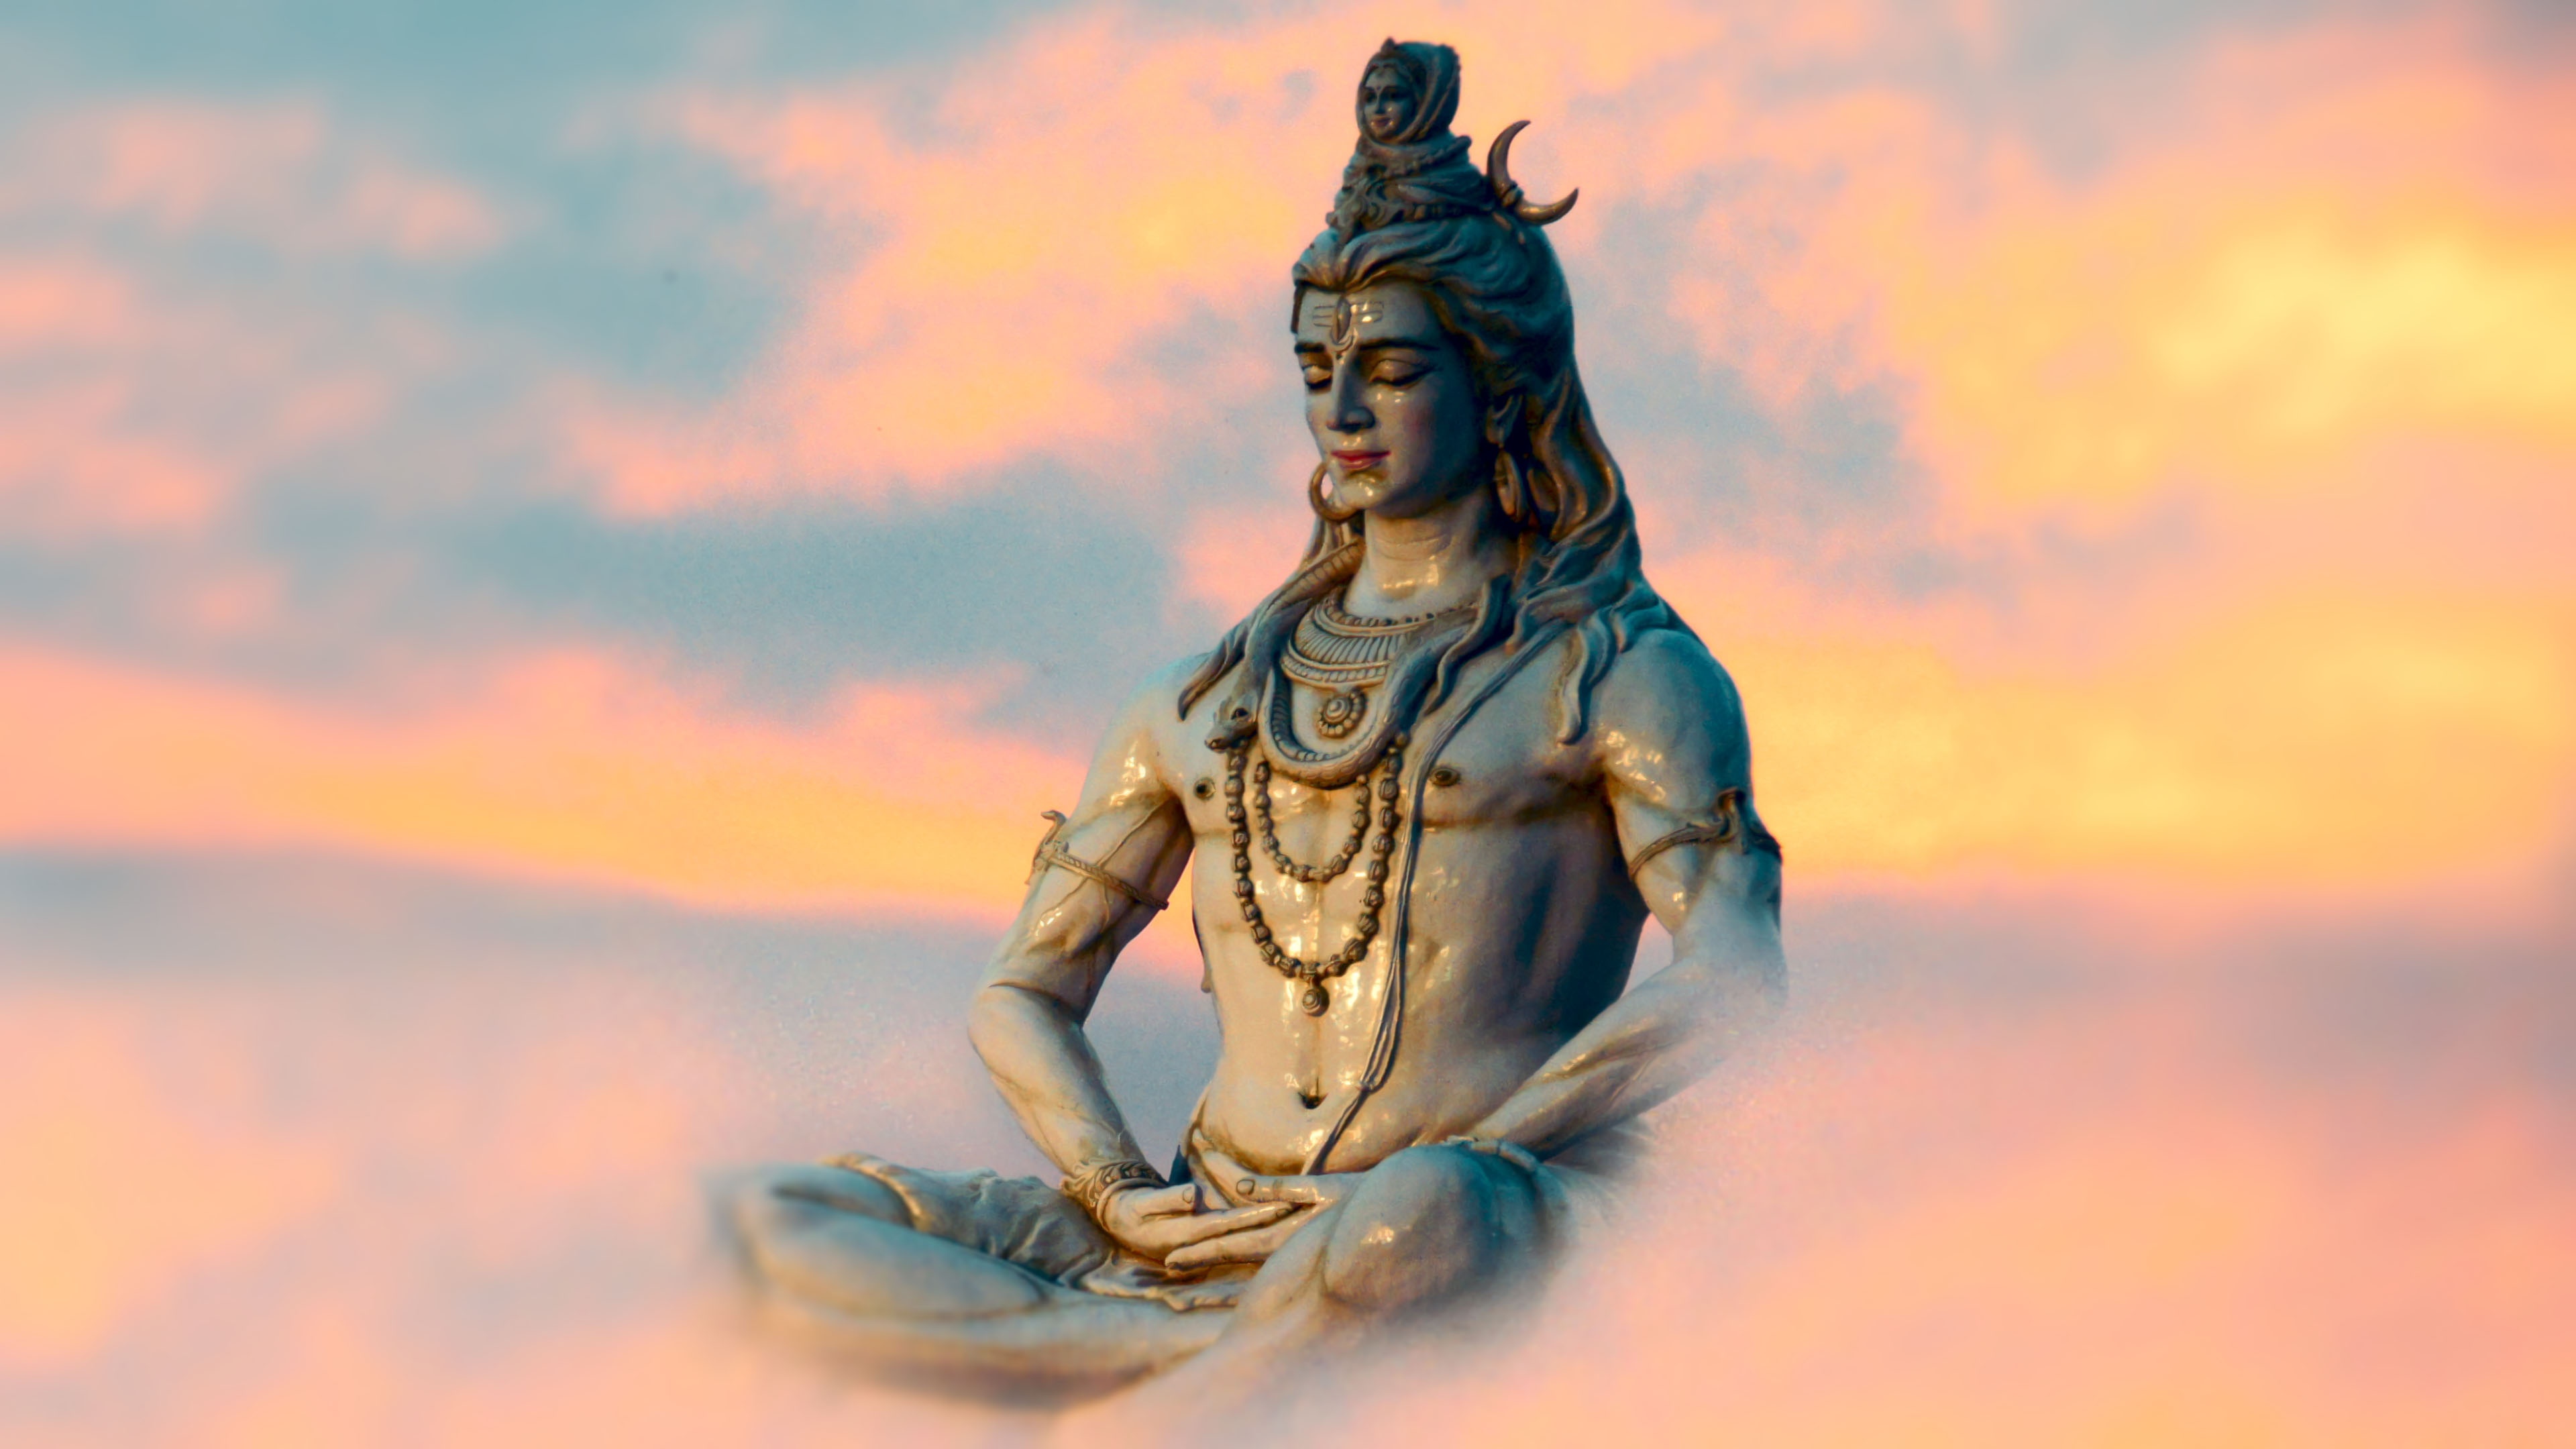 Hd Wallpaper Lord Shiva - HD Wallpaper 